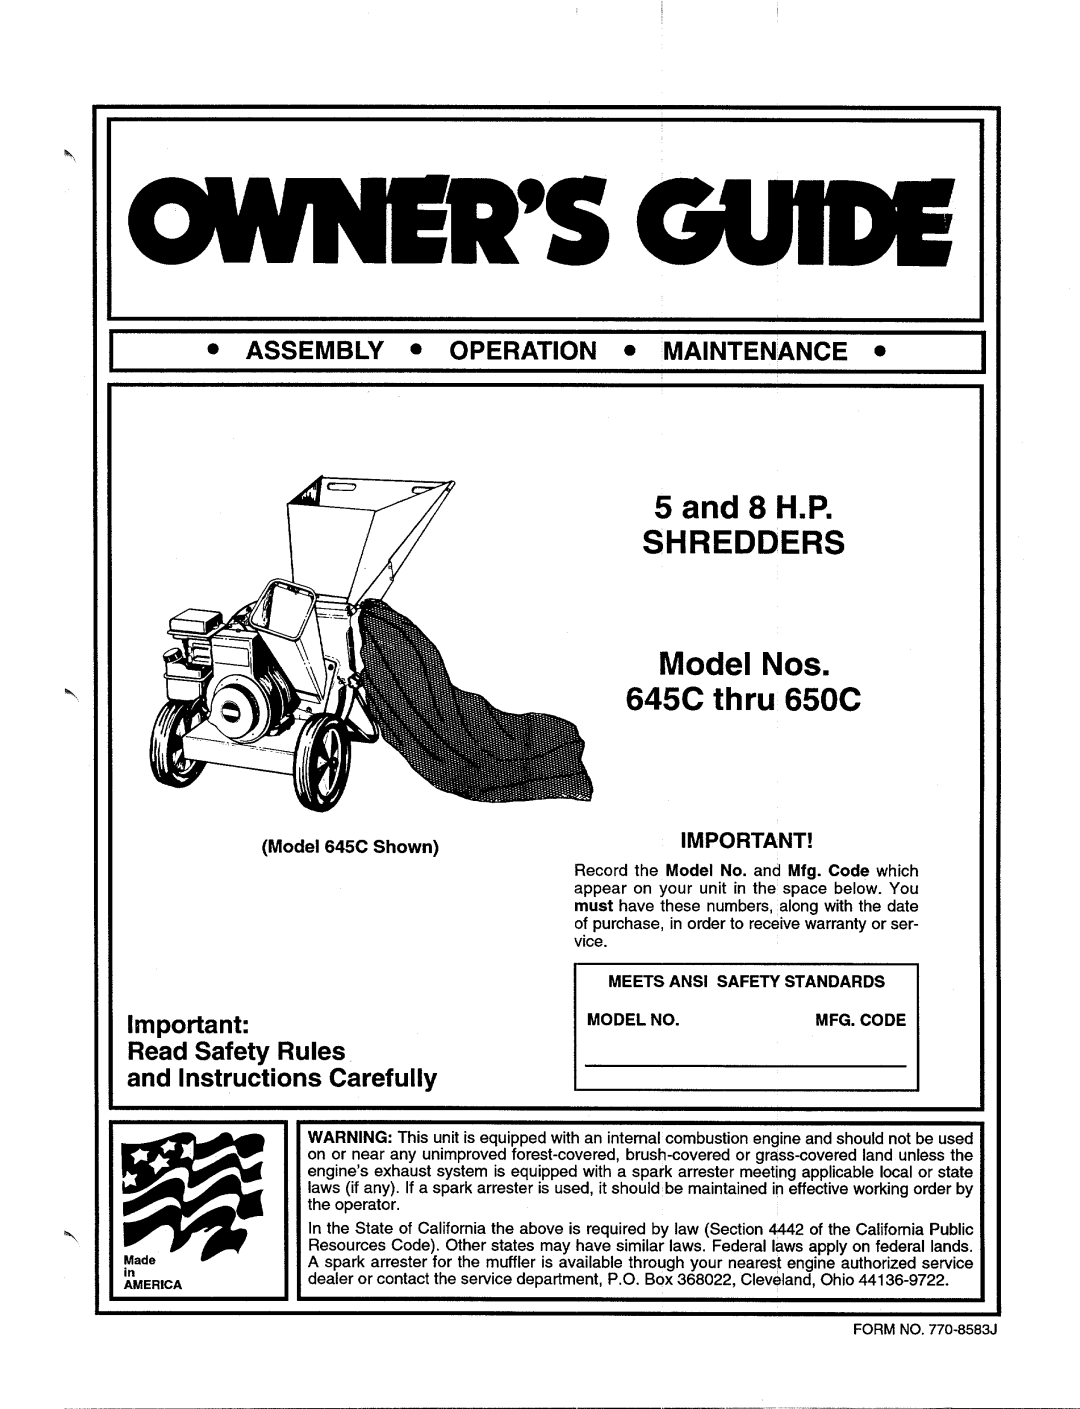 MTD 645C thru 650C manual 